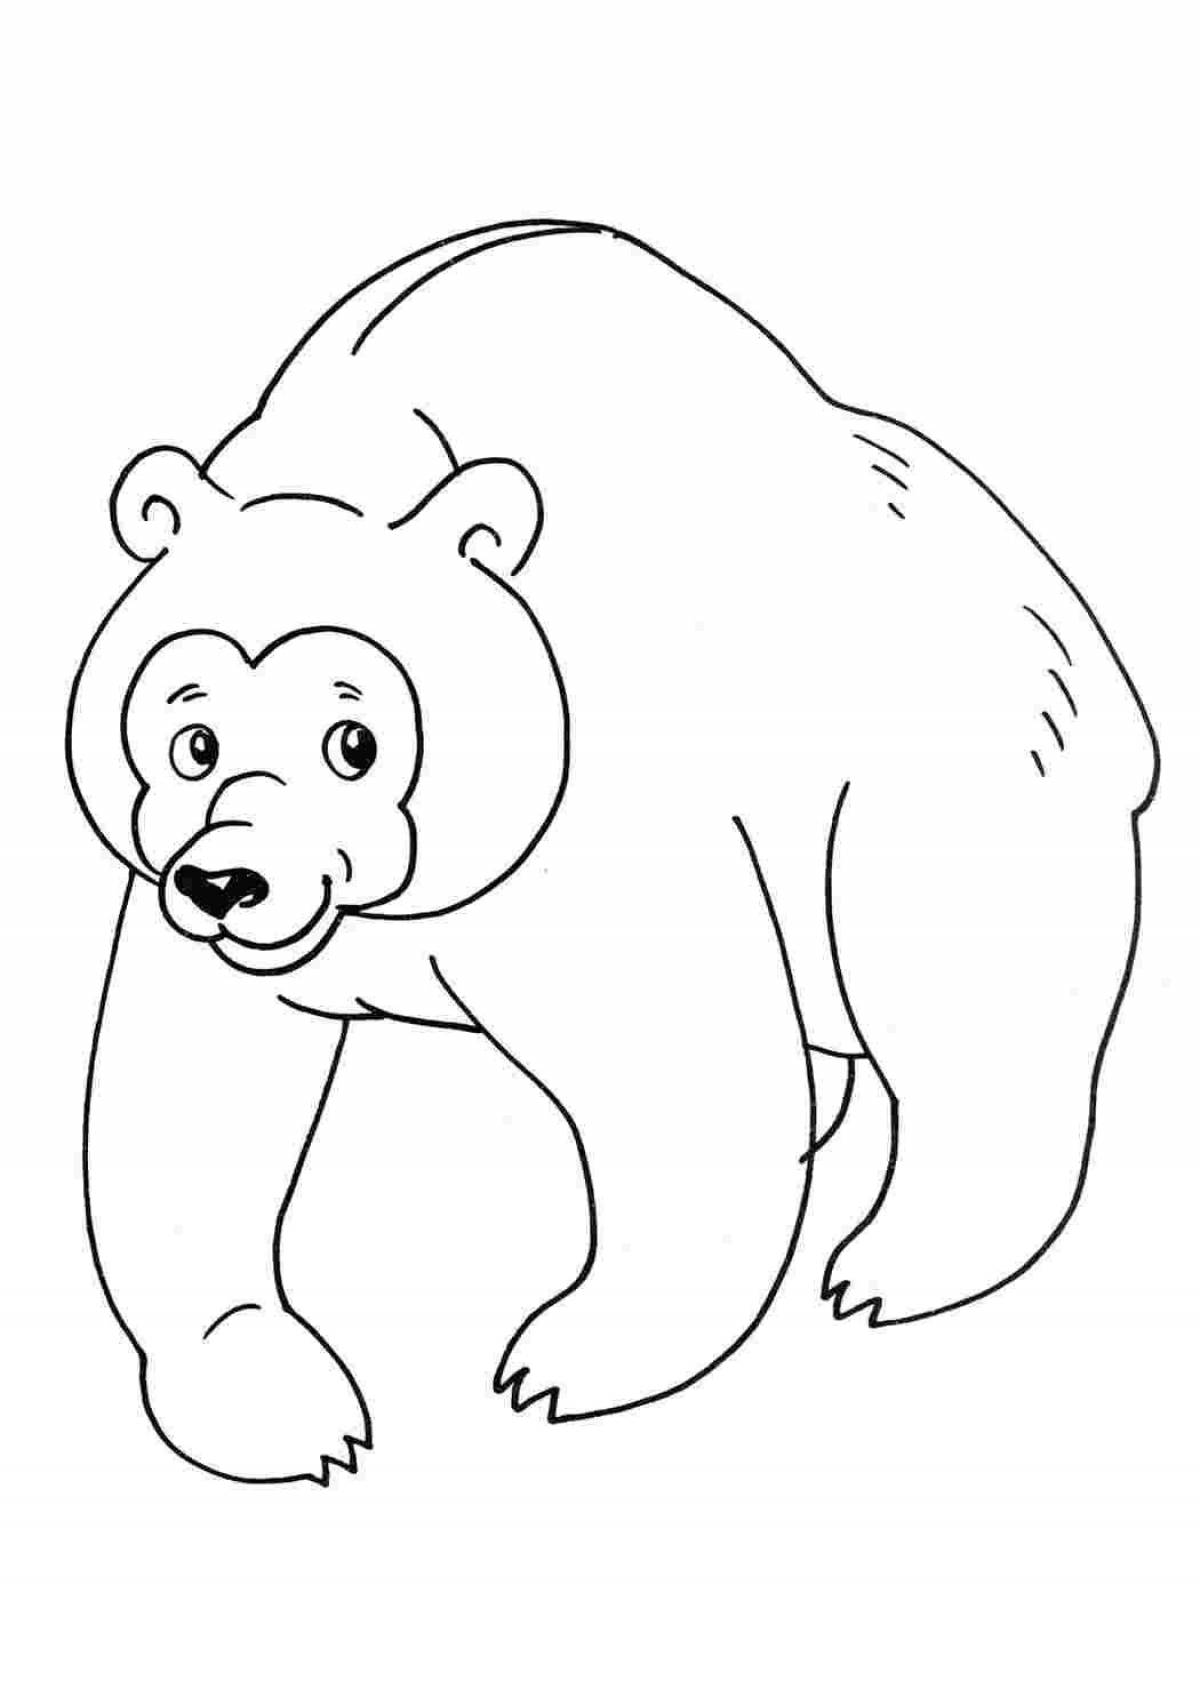 Раскраска счастливый бурый медведь для детей